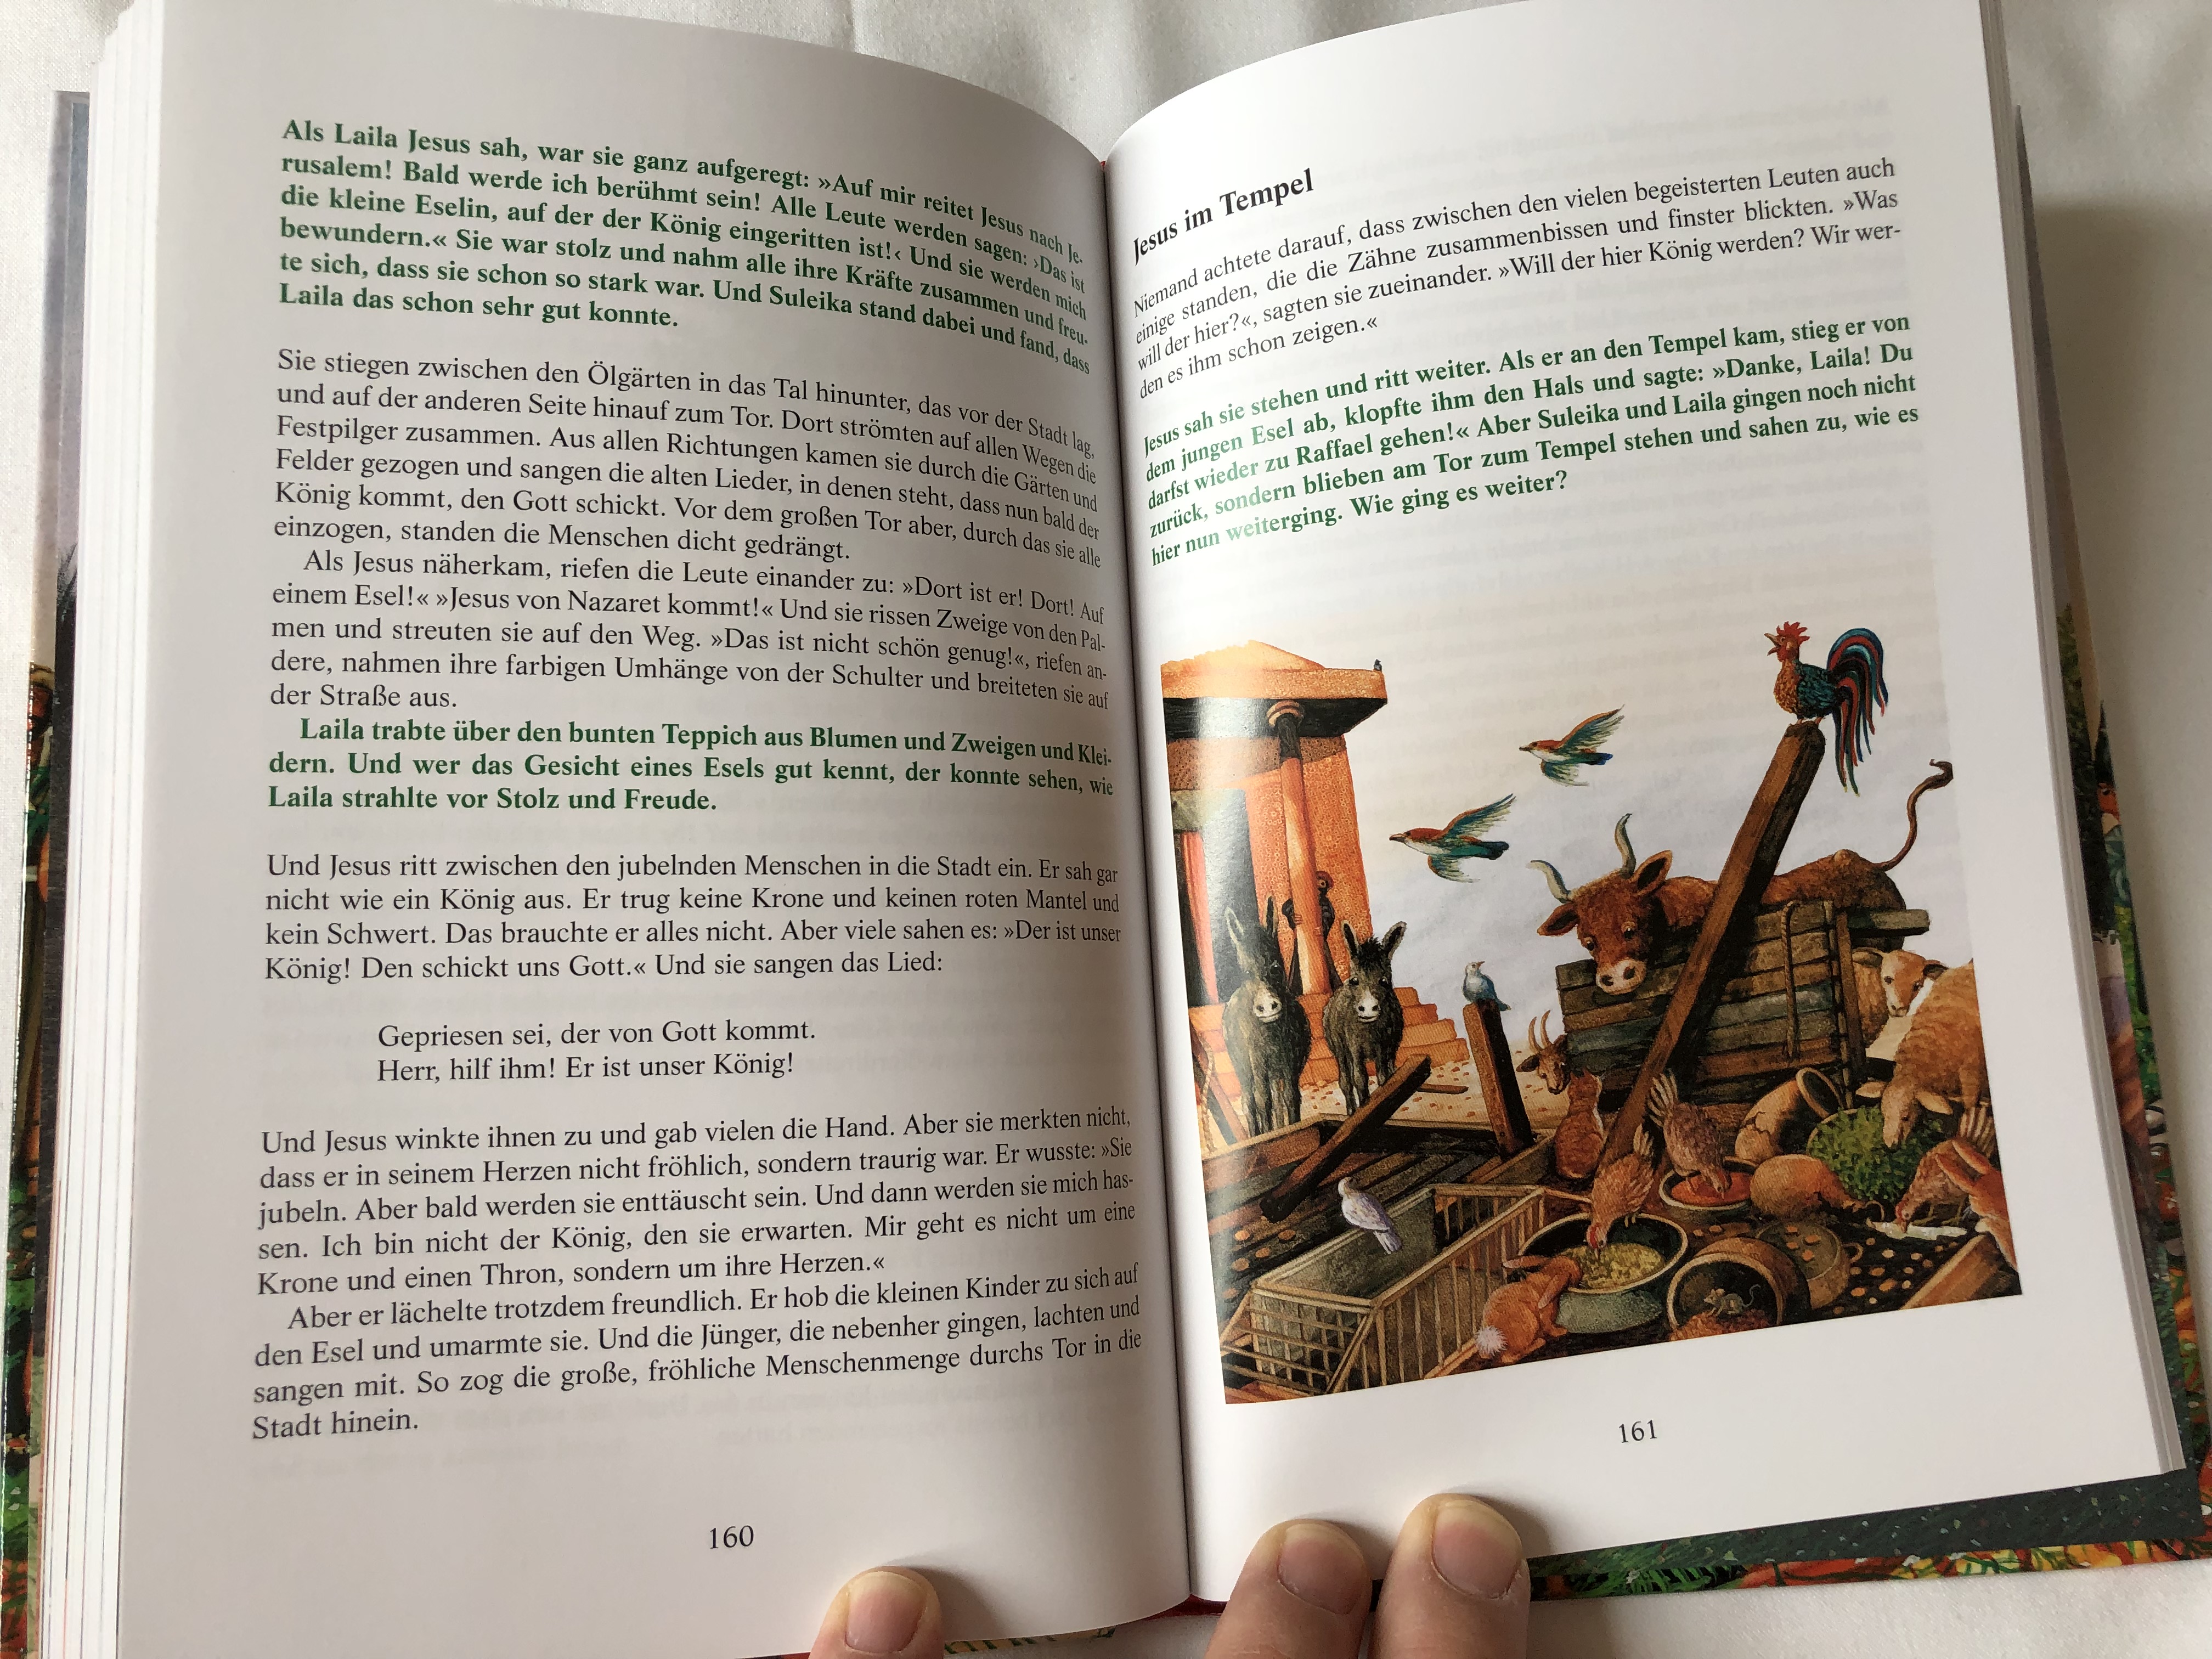 die-kinderbibel-von-j-rg-zink-mit-bildern-von-pieter-kunstreich-the-children-s-bible-by-j-rg-zink-with-illustrations-by-pieter-kunstreich-german-language-bible-for-children-aged-4-hardcover-10-.jpg